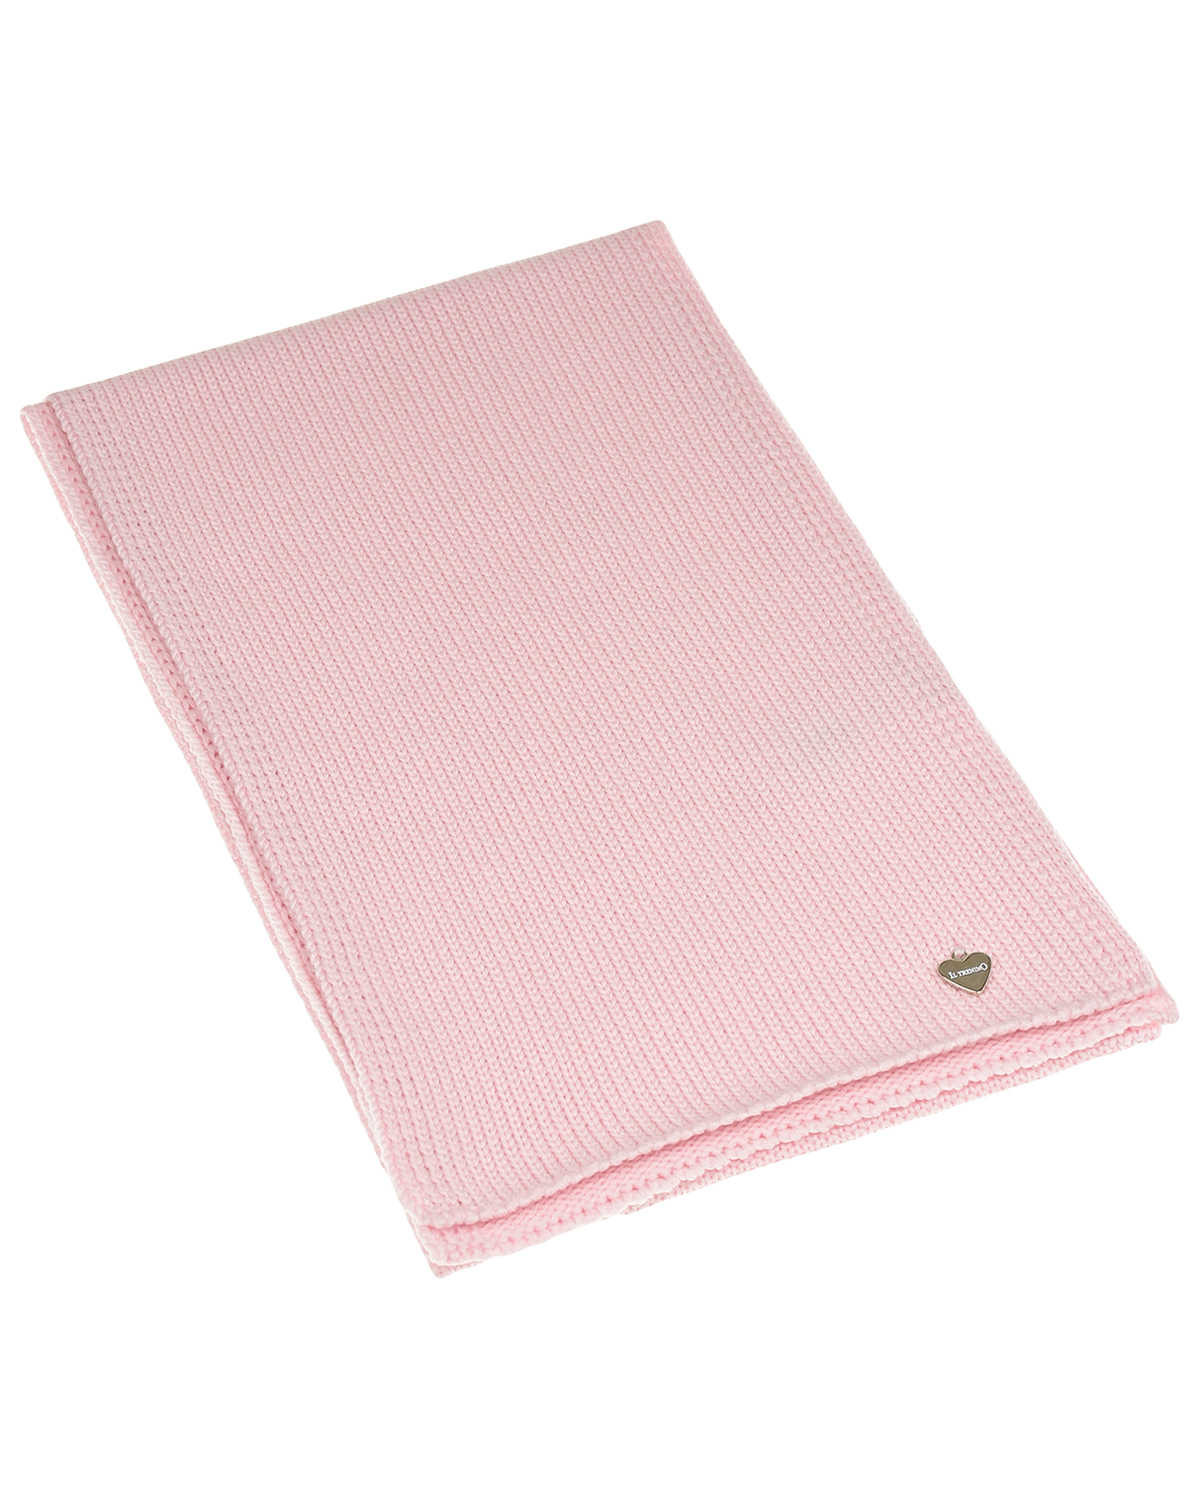 Светло-розовый шарф 142х21 см. Il Trenino детское, размер unica - фото 1